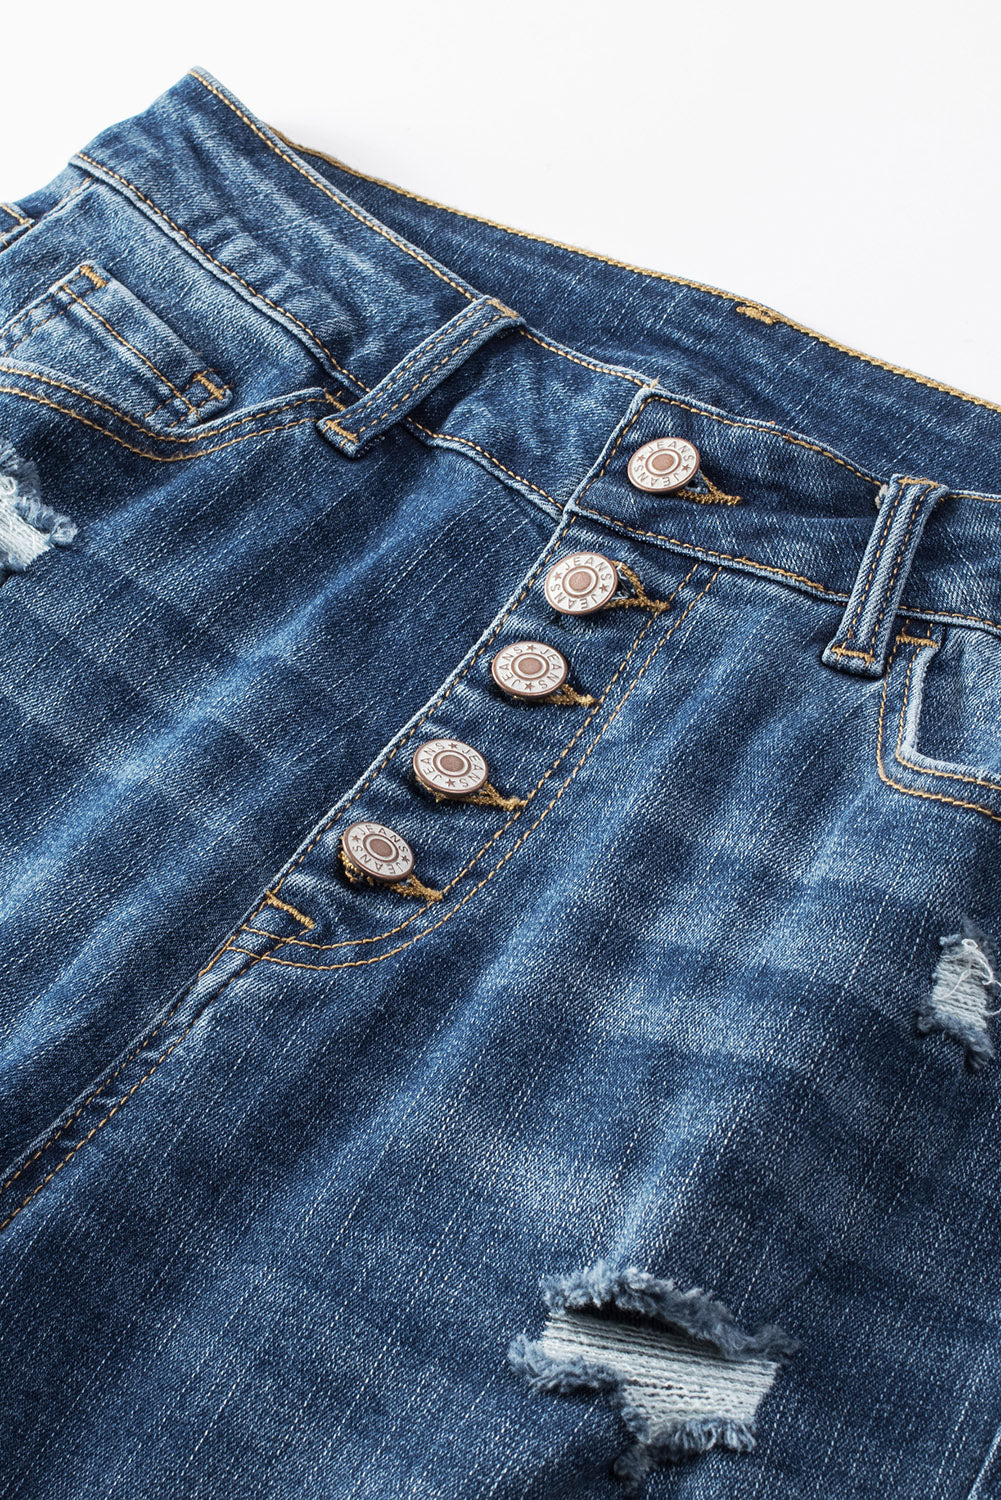 Blaue Skinny-Jeans mit Knopfleiste und hoher Taille im Distressed-Look